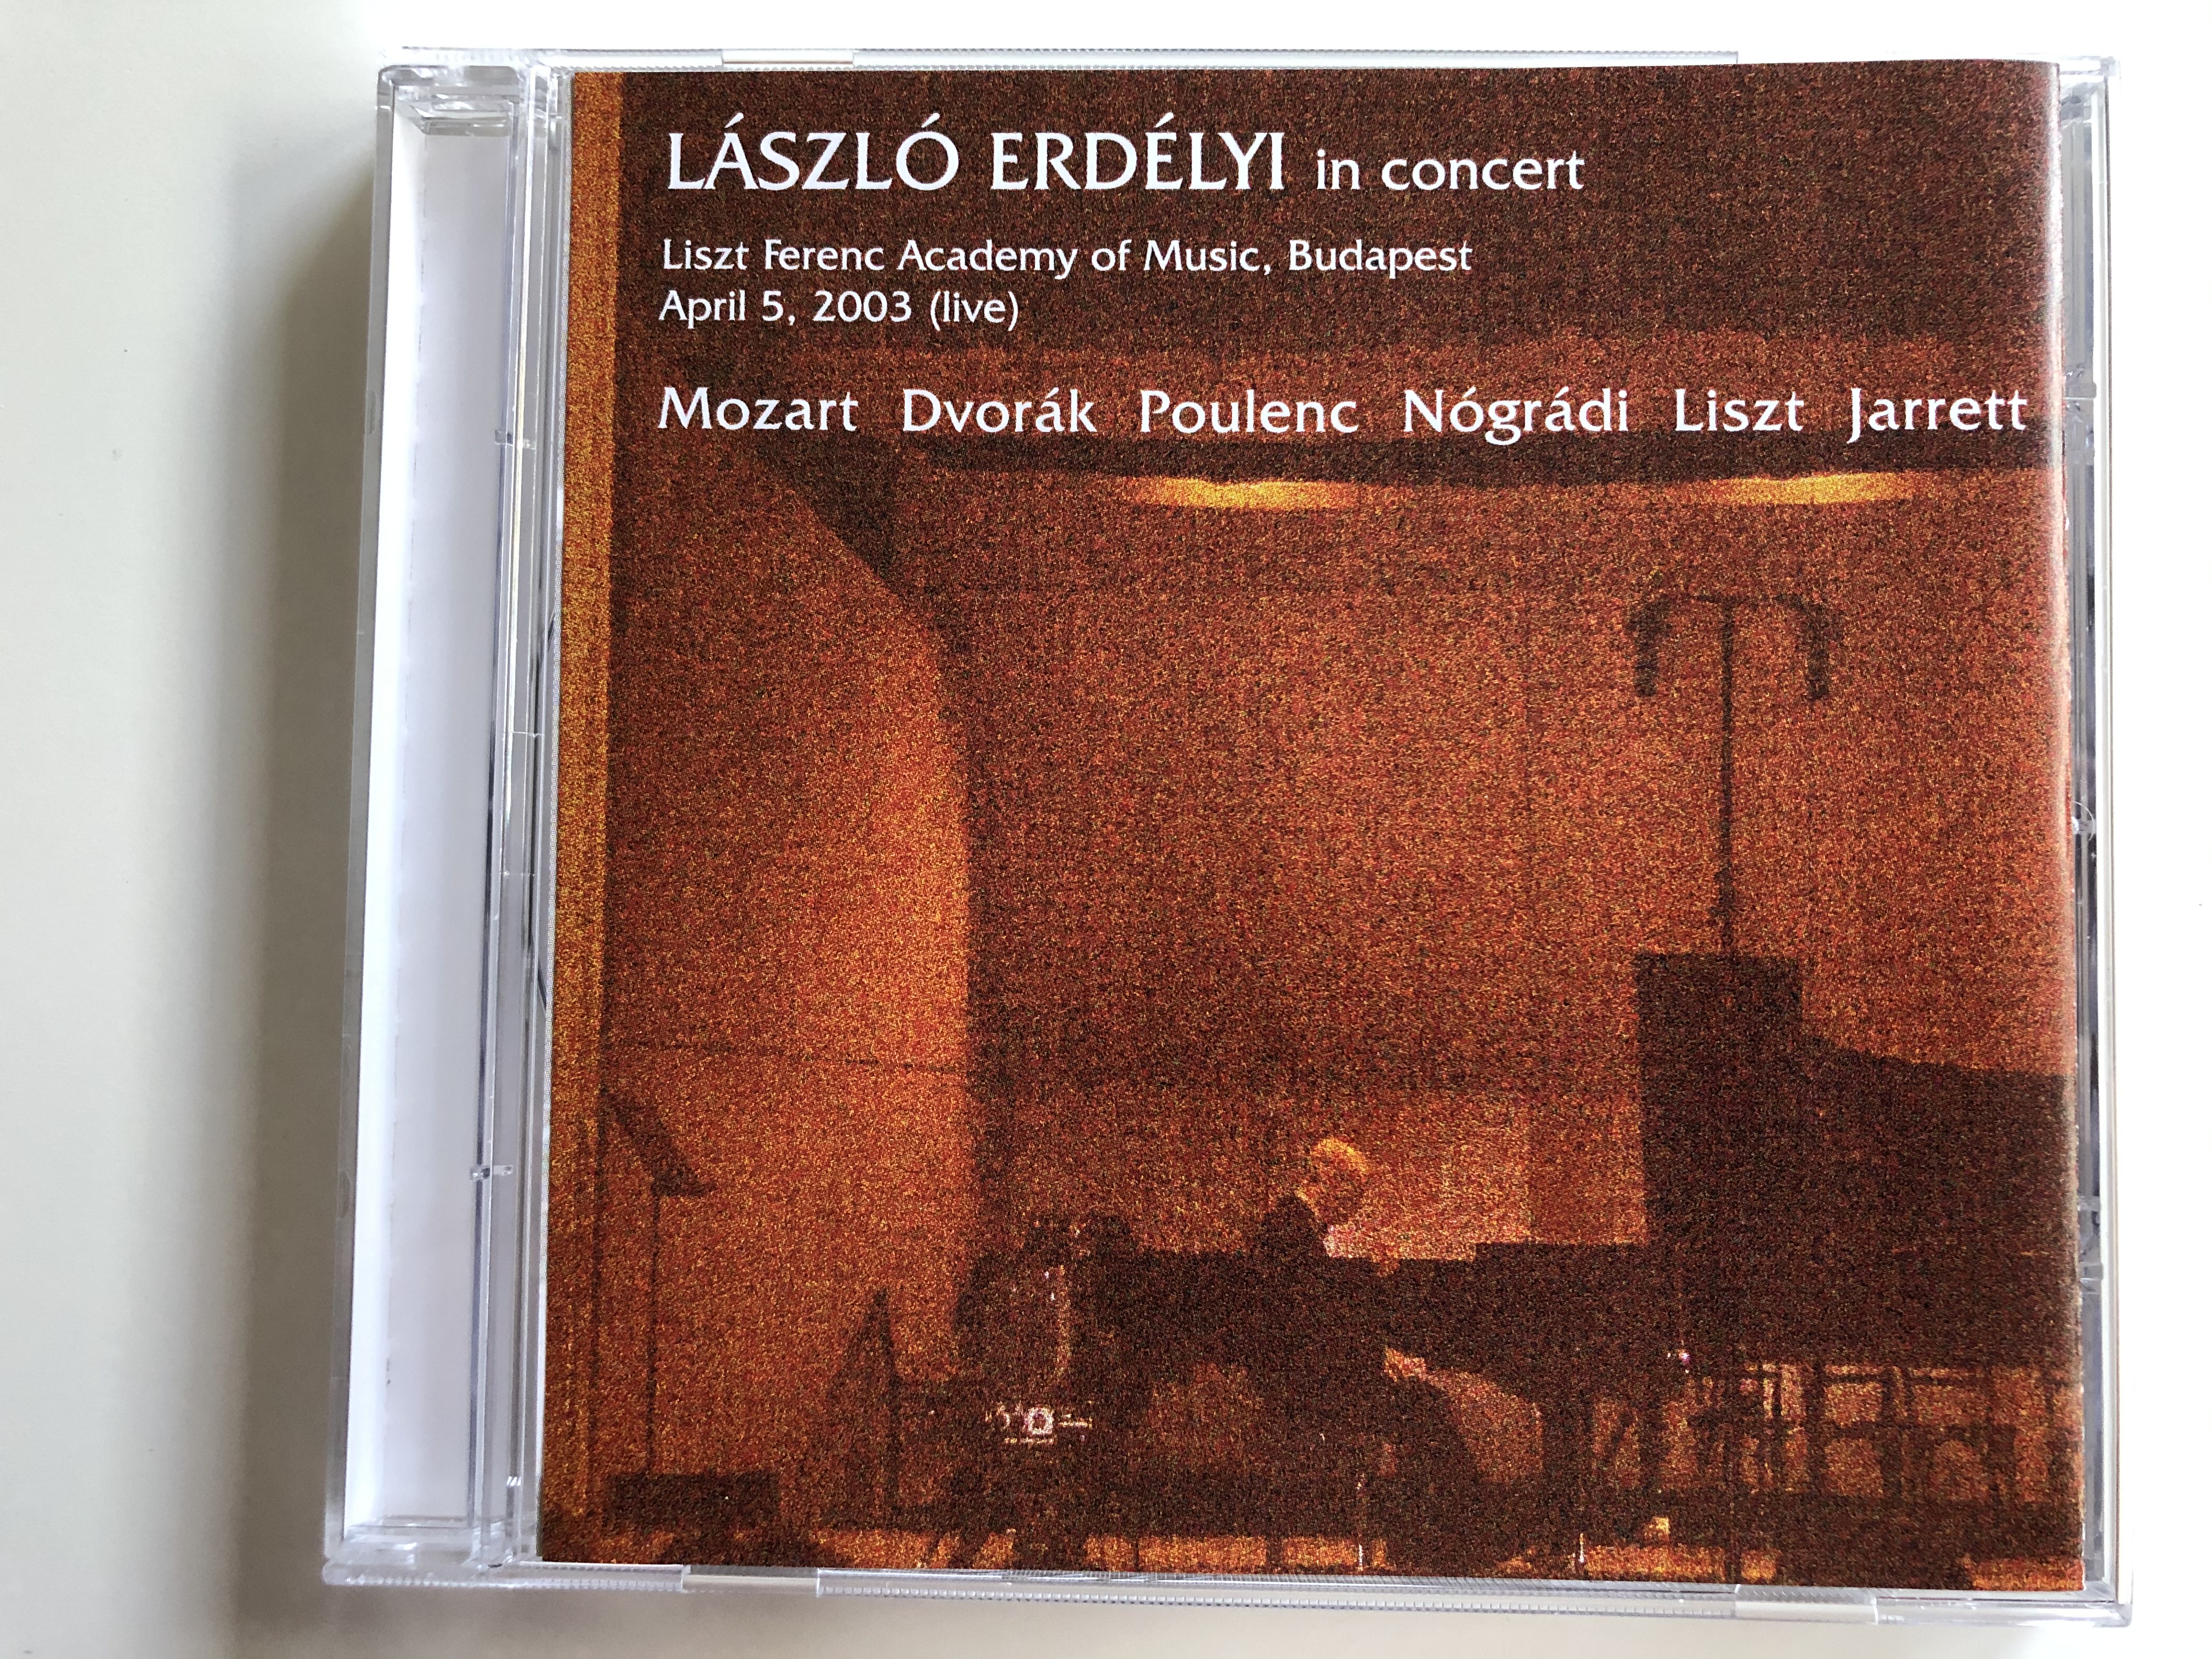 laszlo-erdelyi-in-concert-liszt-ferenc-academy-of-music-budapest-april-5-2003-live-mozart-dvorak-poulenc-nogradi-liszt-jarrett-erdelyi-audio-cd-erdelyicd-01-1-.jpg